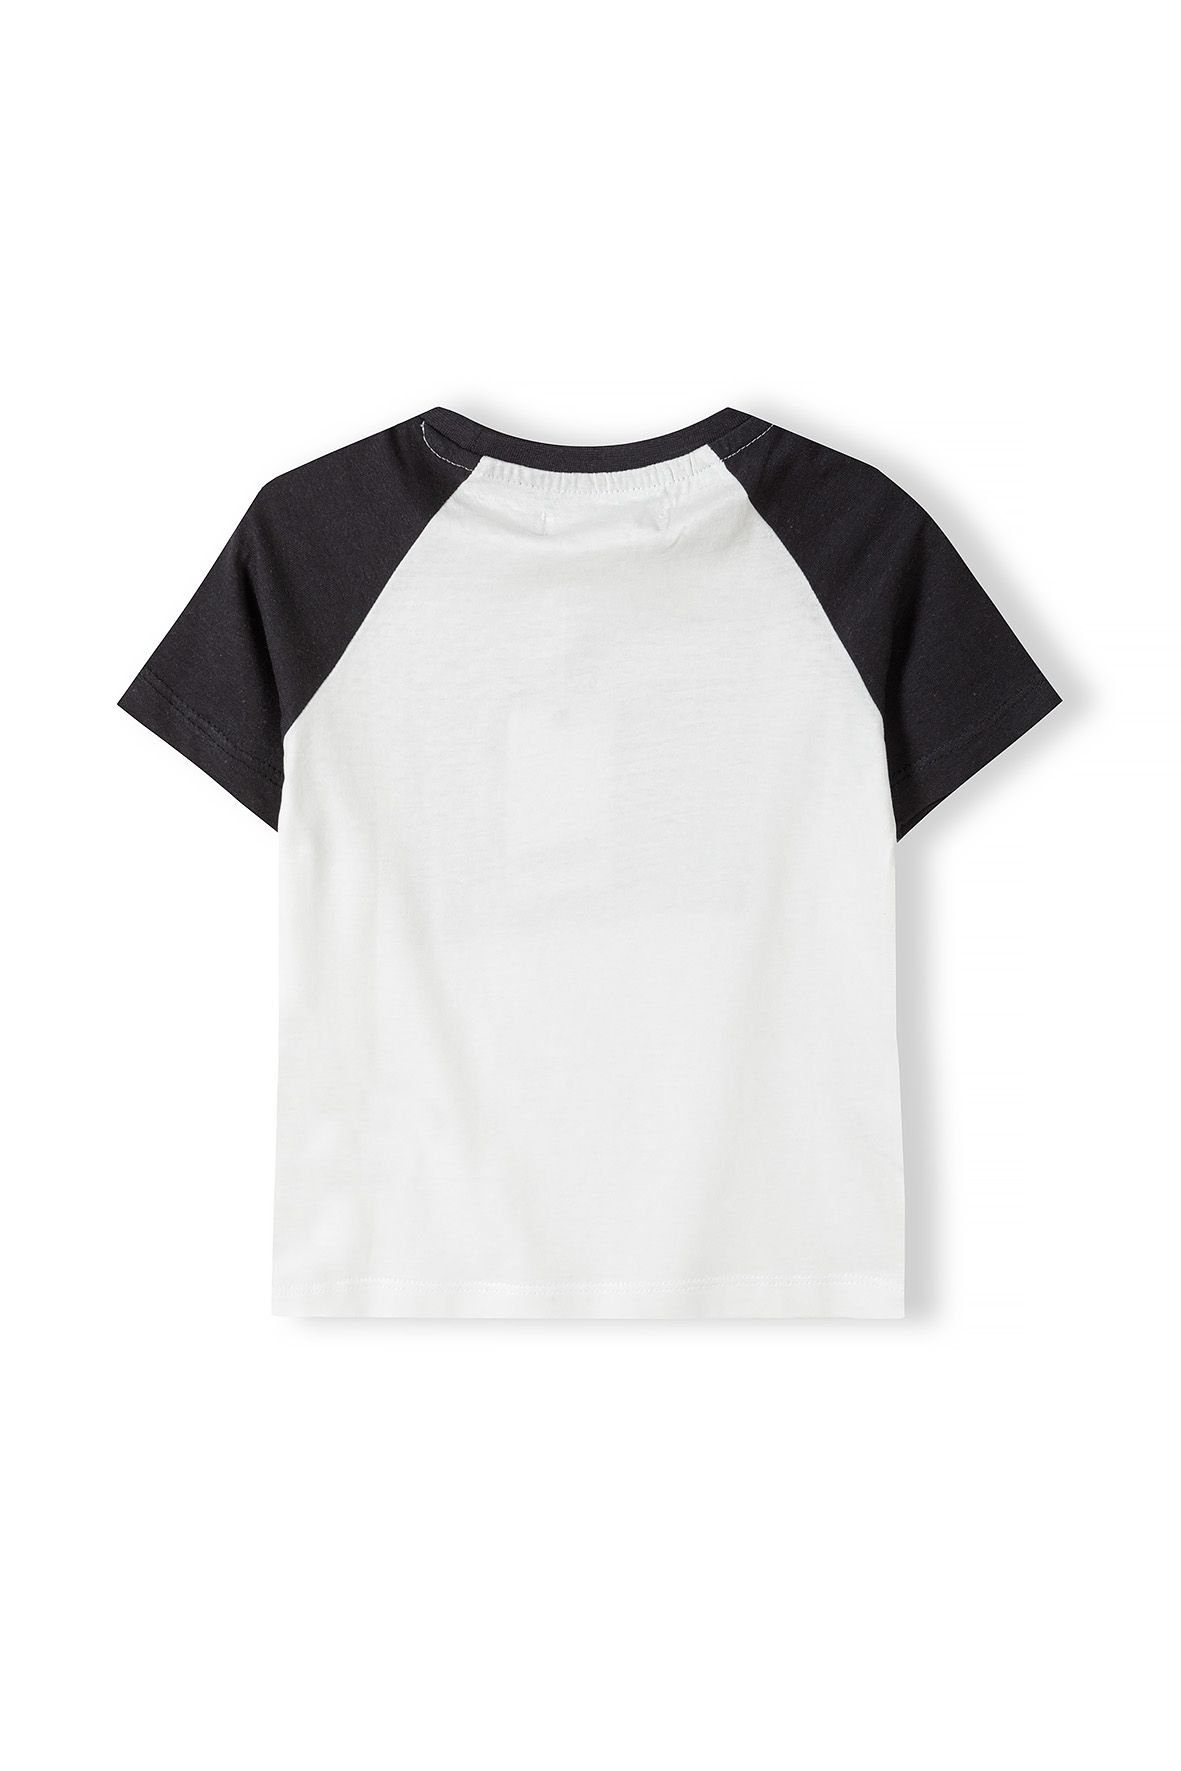 MINOTI T-Shirt Sommer (3y-14y) Cremeweiß bunten Ärmeln T-Shirt mit